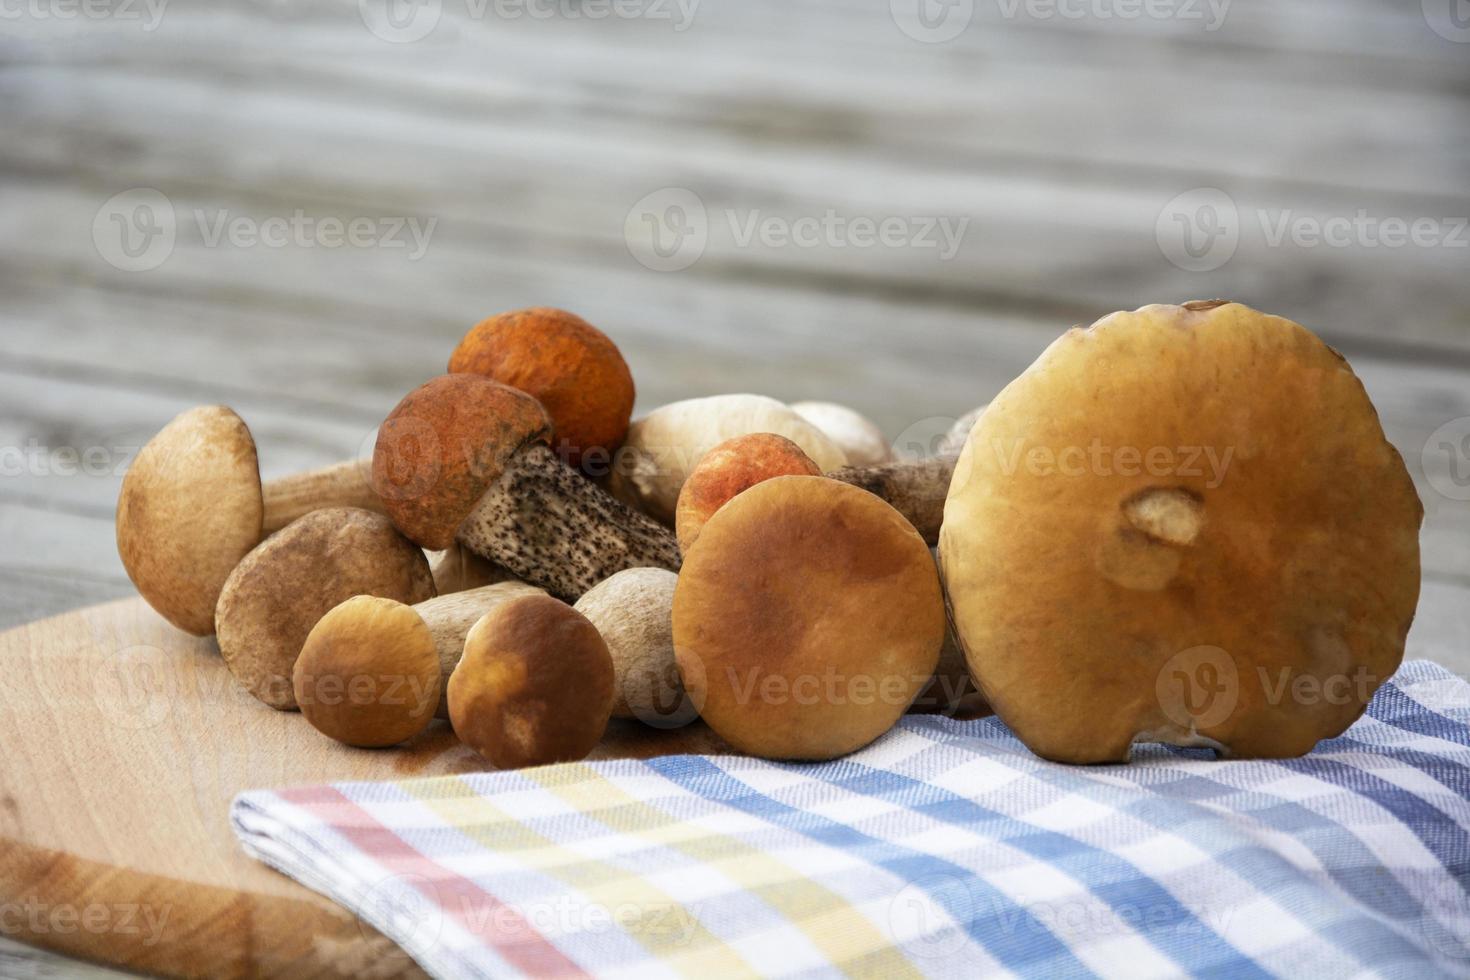 cogumelos porcini mentem sobre uma placa de corte. cogumelos comestíveis foto